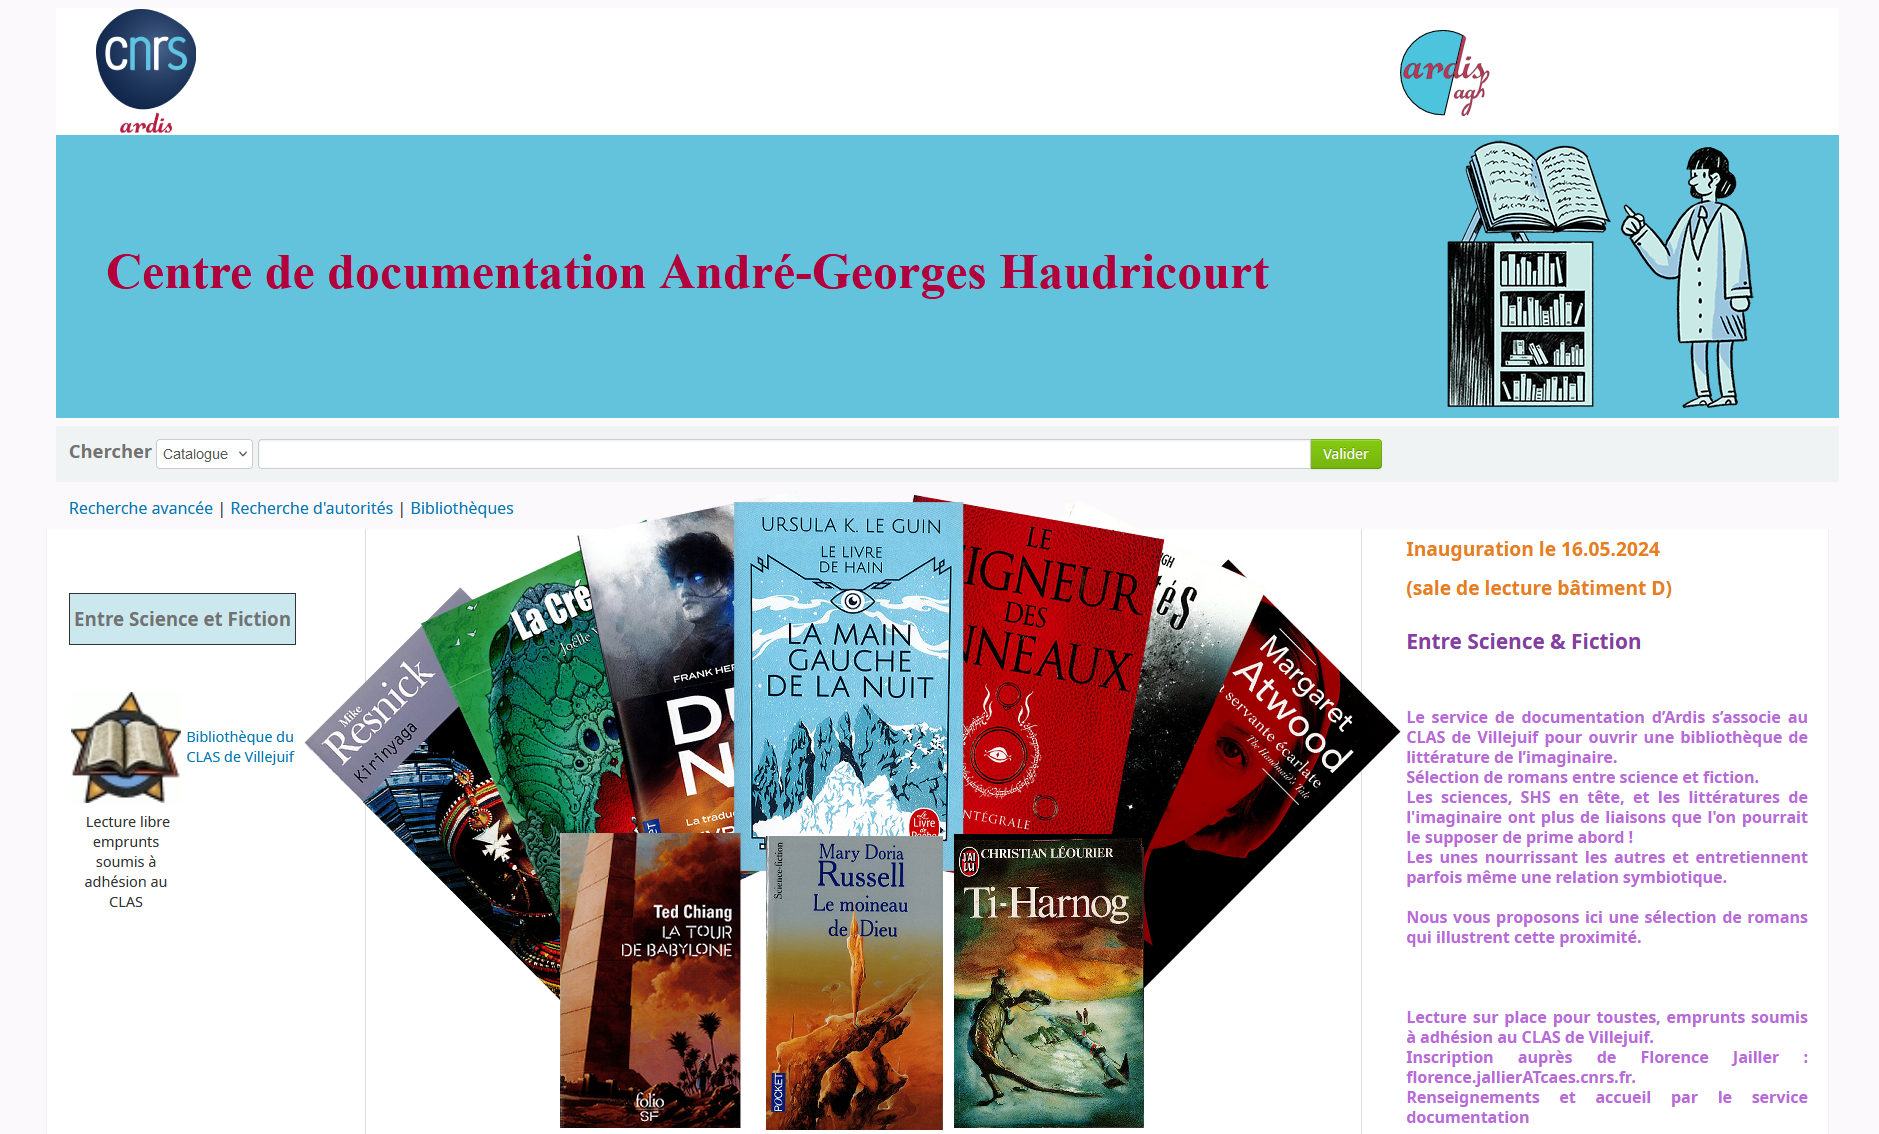 Sélection de couvertures de romans du fonds "Entre science et fiction" présenté sur le catalogue du centre de documentation AGH